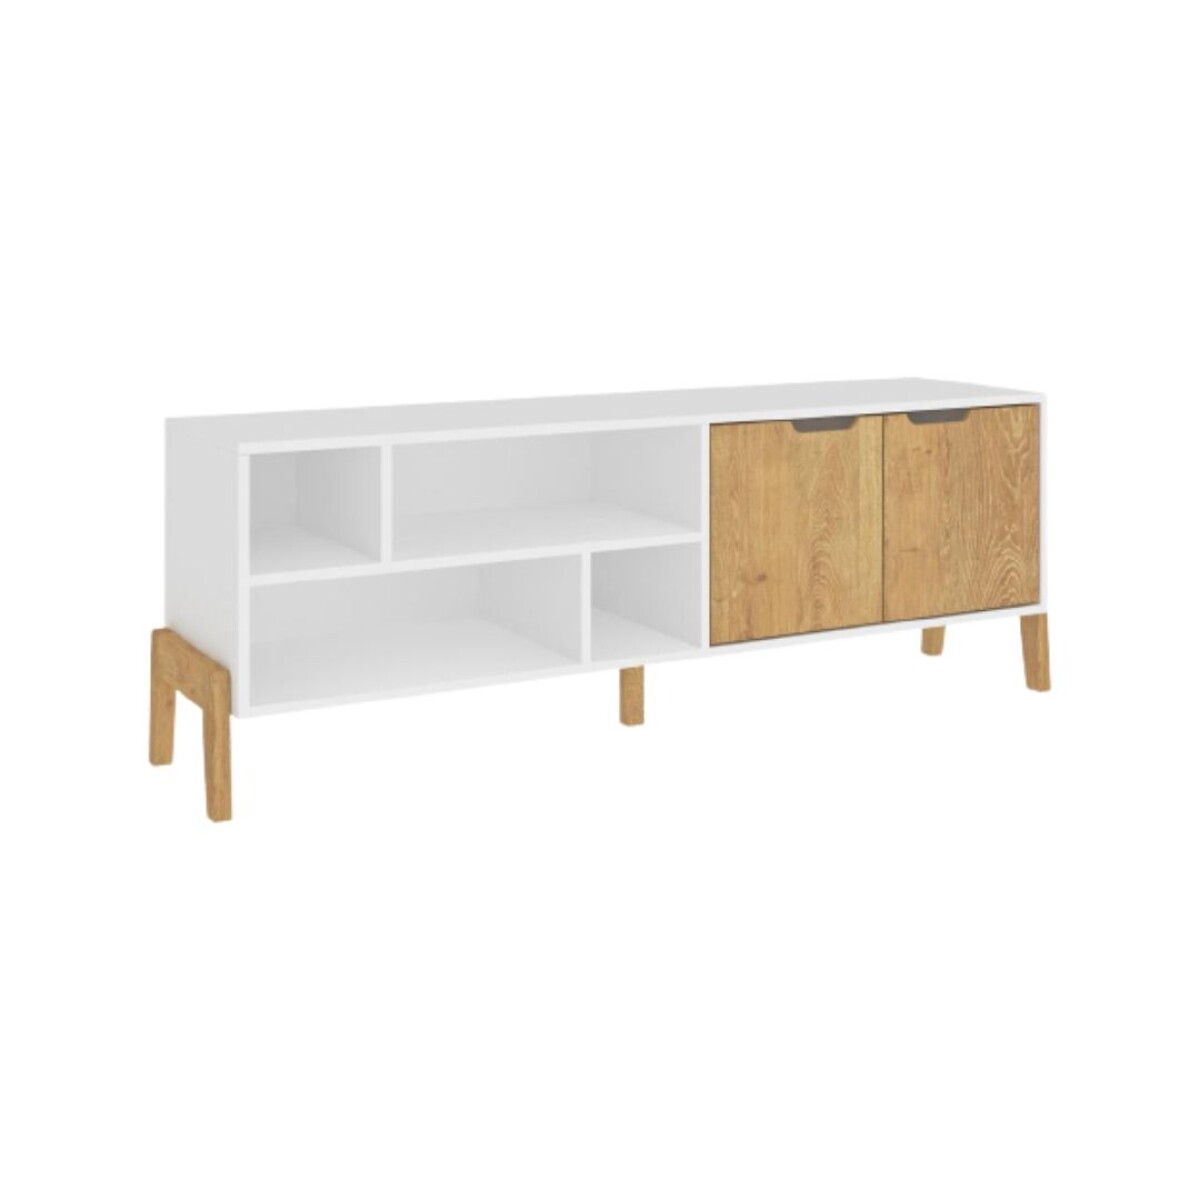 Rack mueble para televisión combinado con madera blanco wood - 1603BLANCOWOOD 